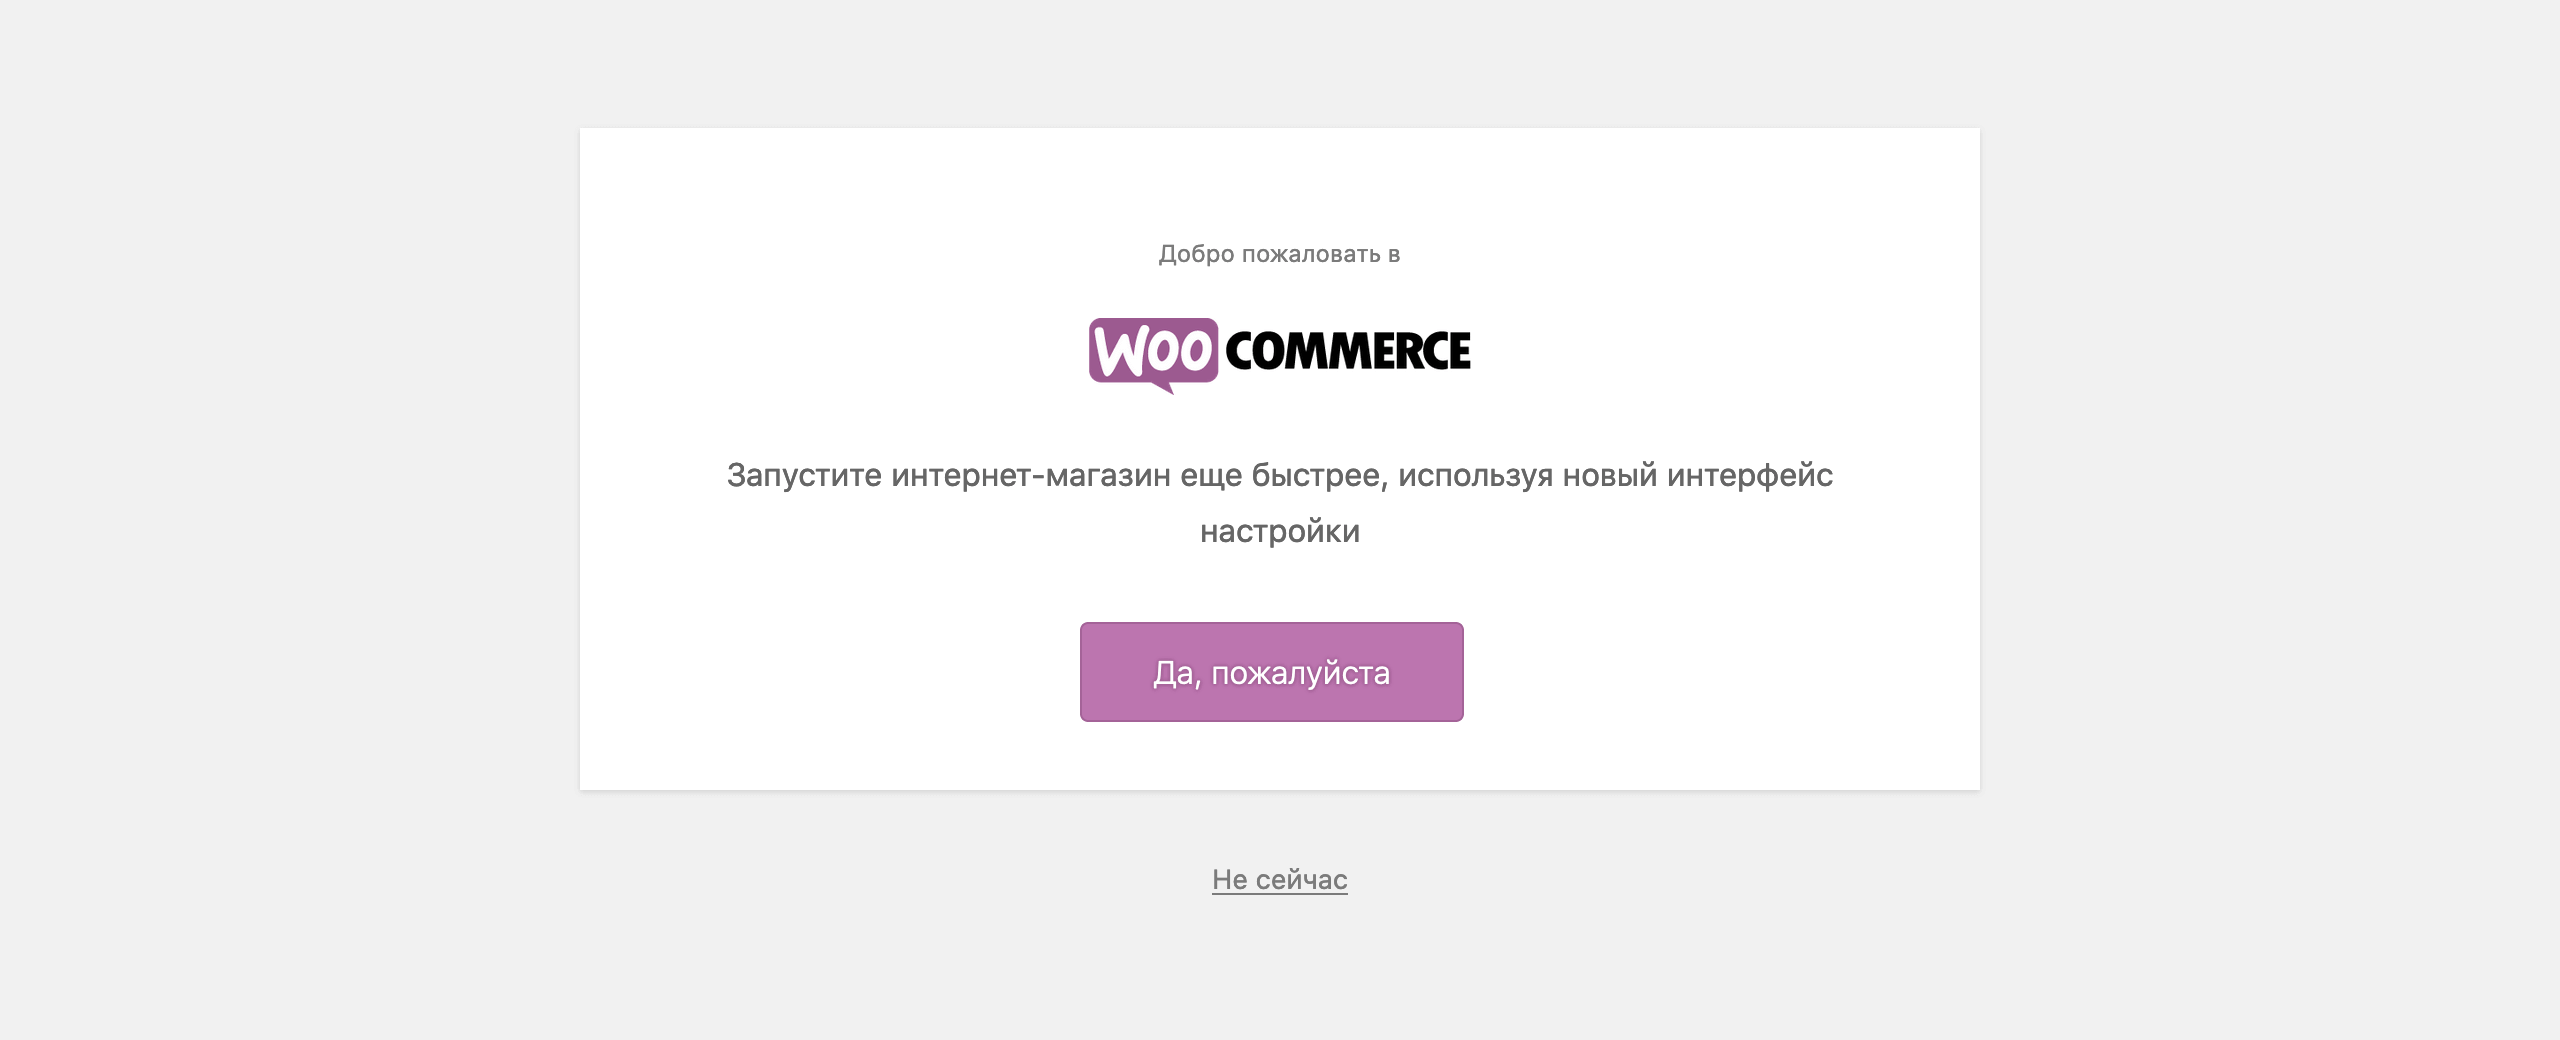 WooCommerce инструкция: приветственная страница мастера по настройке магазина